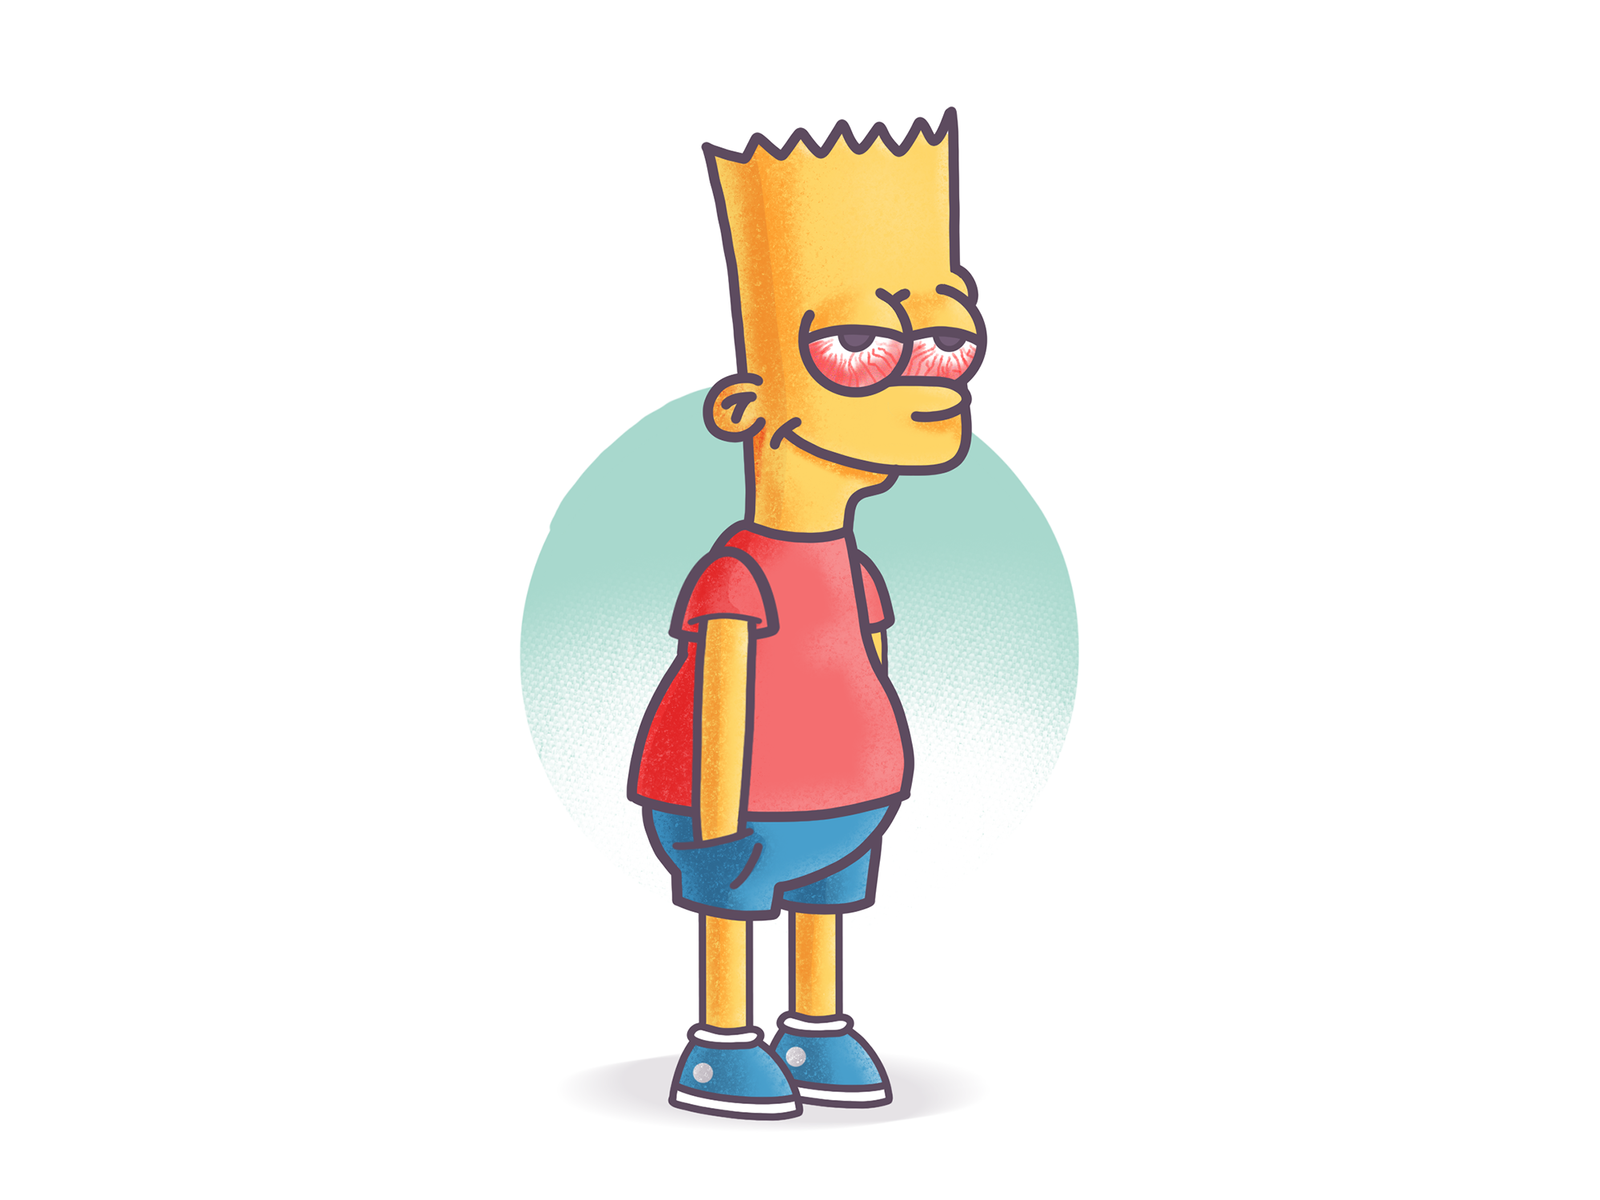 Bart High Simpson by Varun Kumar on Dribbble